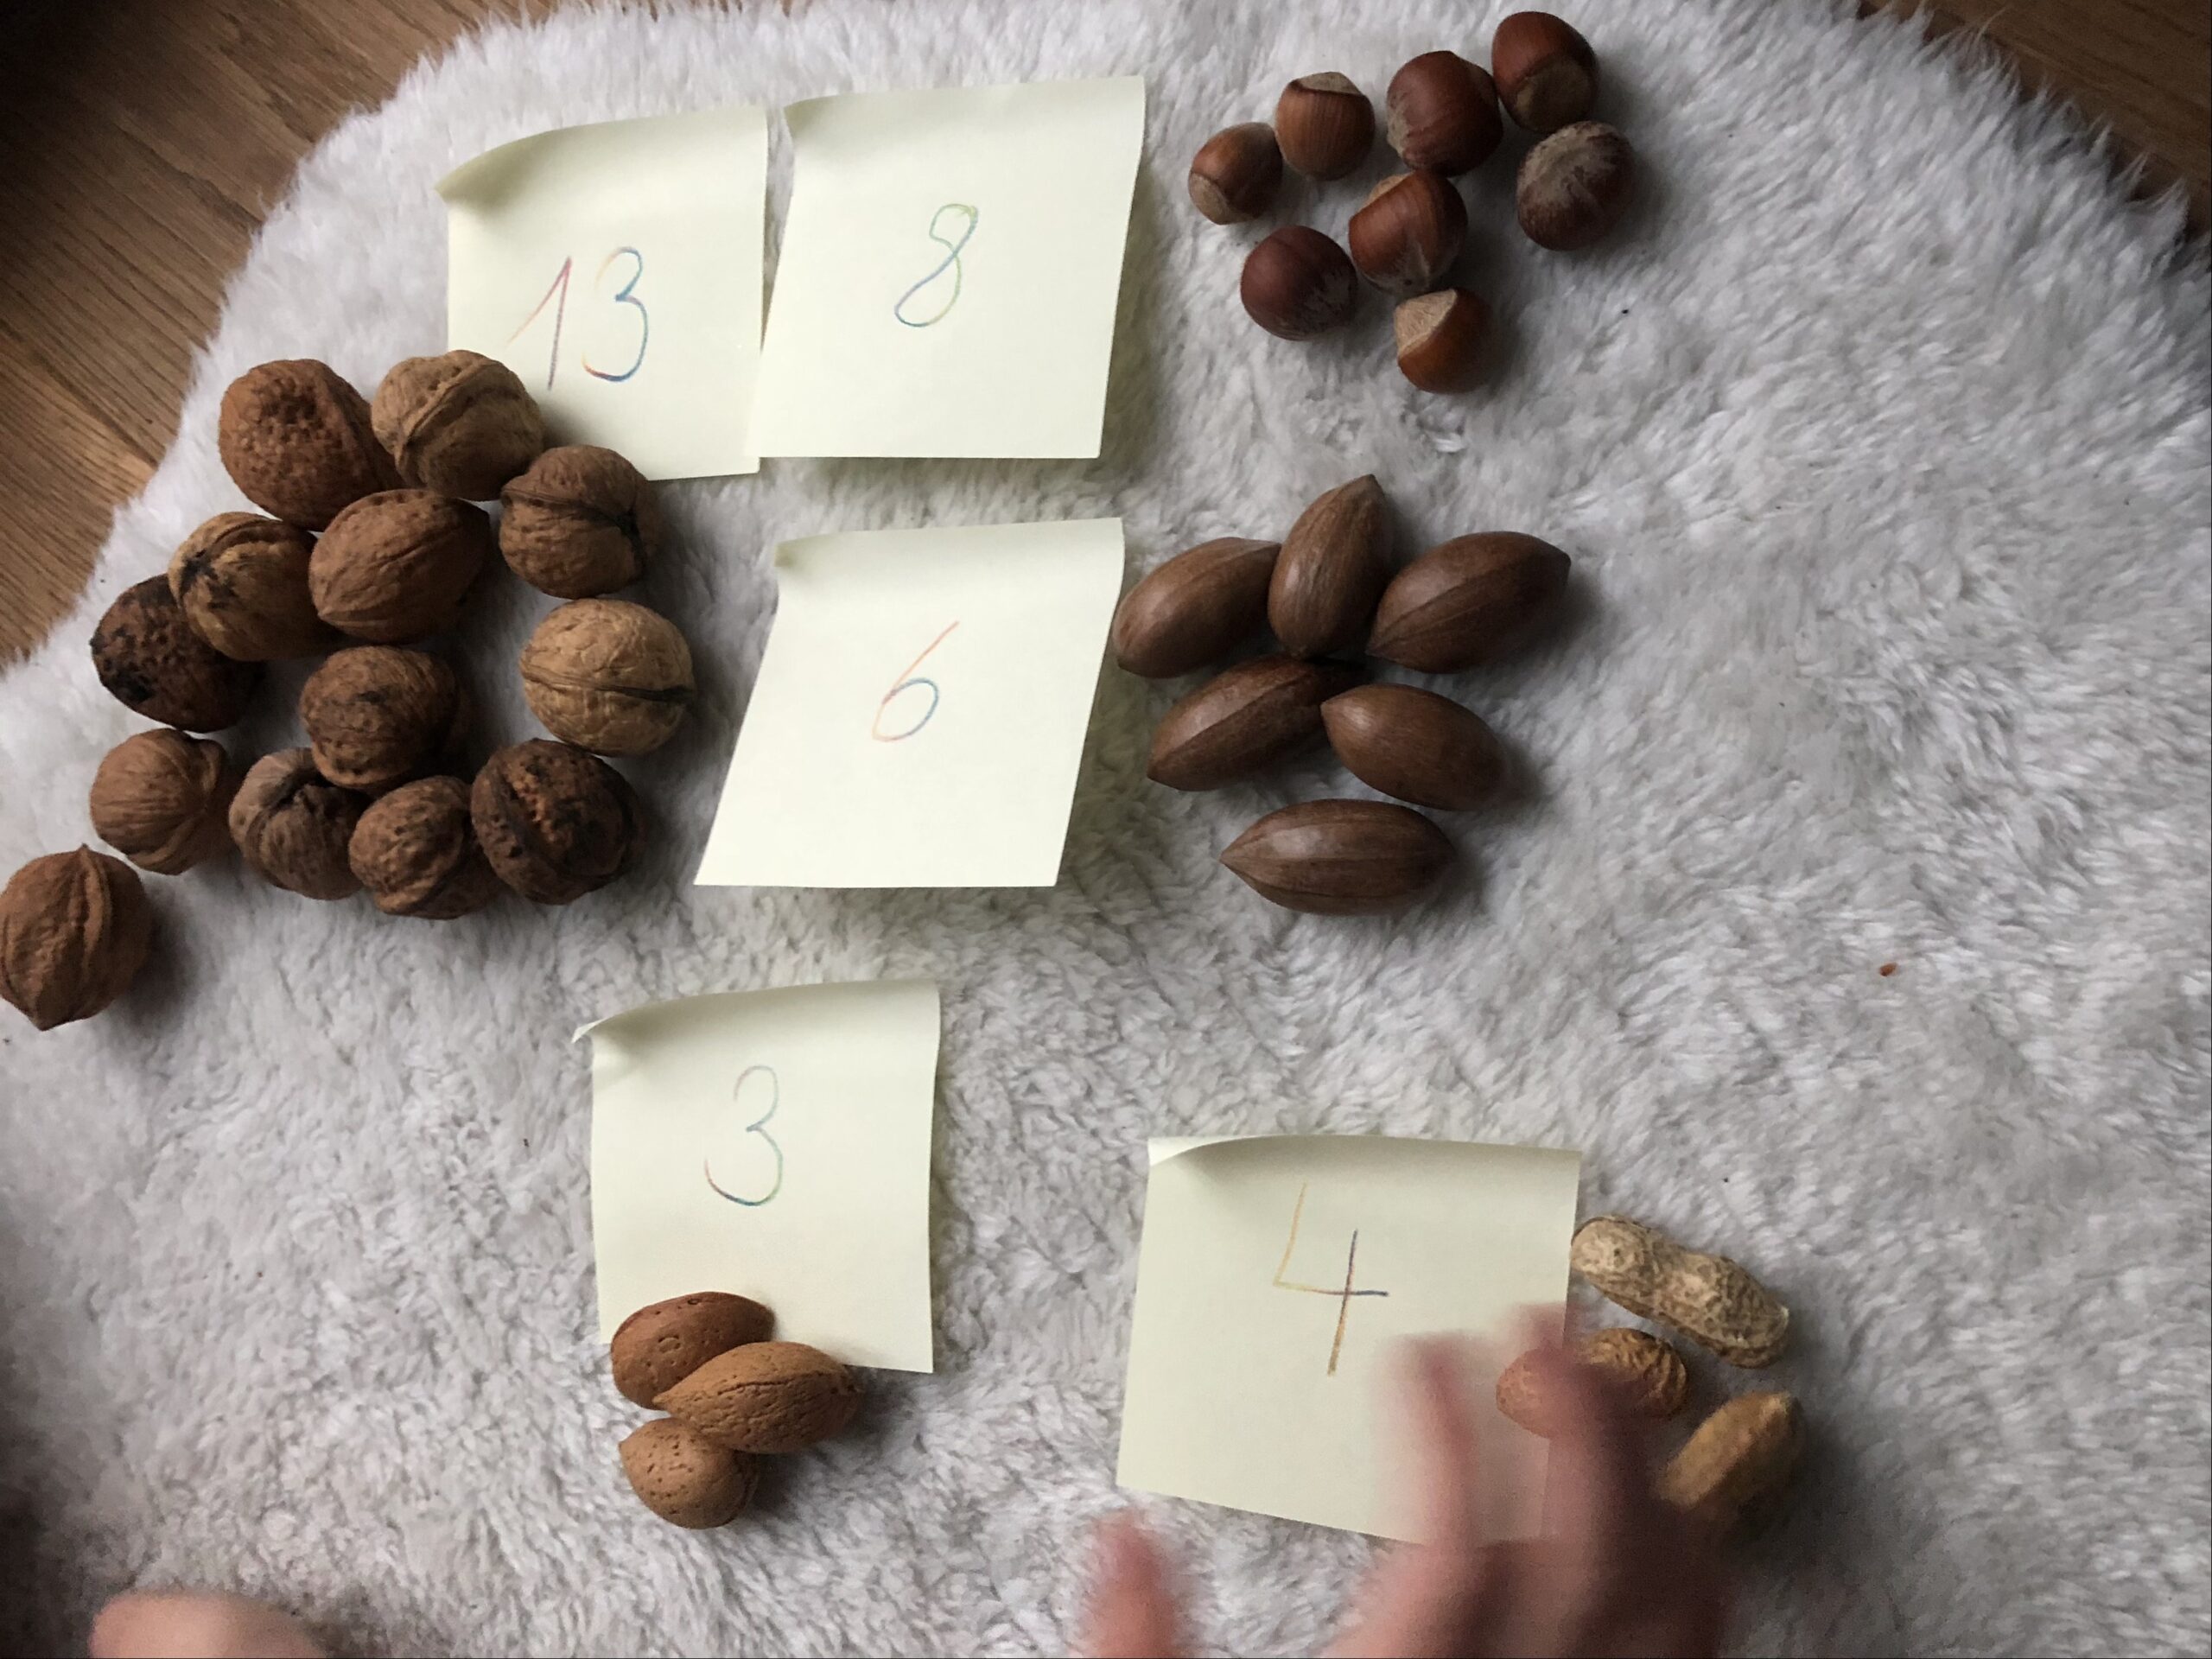 Bild zum Schritt 7 für das Bastel- und DIY-Abenteuer für Kinder: 'Lasst die Kinder die Nüsse den Zahlen zuordnen.  ...'